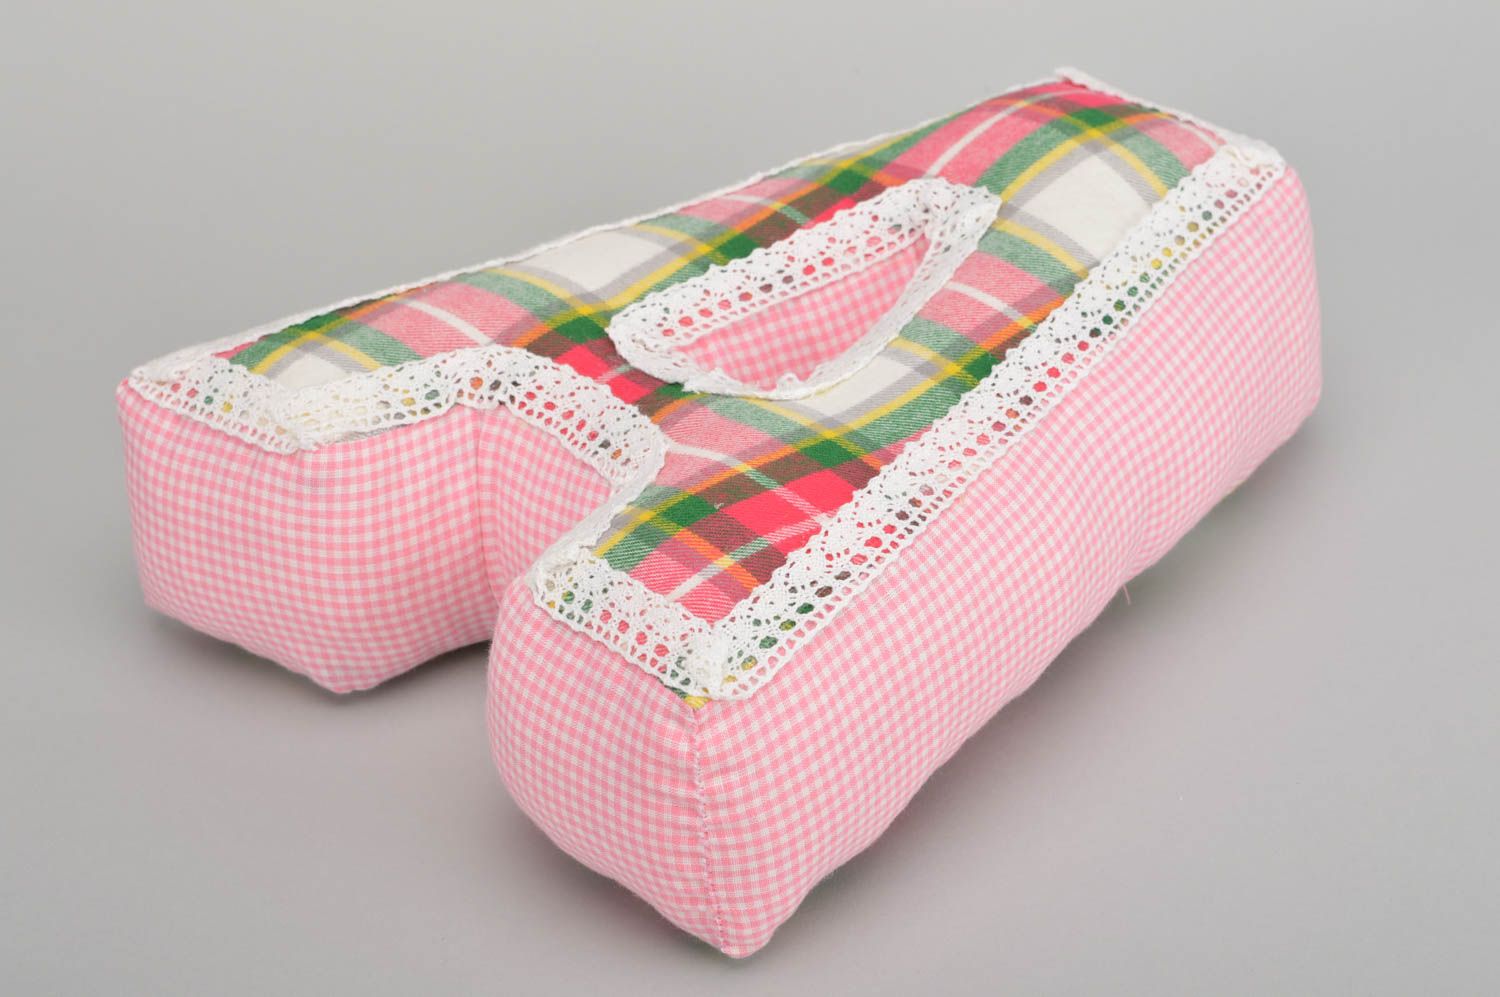 Интерьерная подушка в виде буквы А из хлопка ручной работы розовая в клеточку фото 3